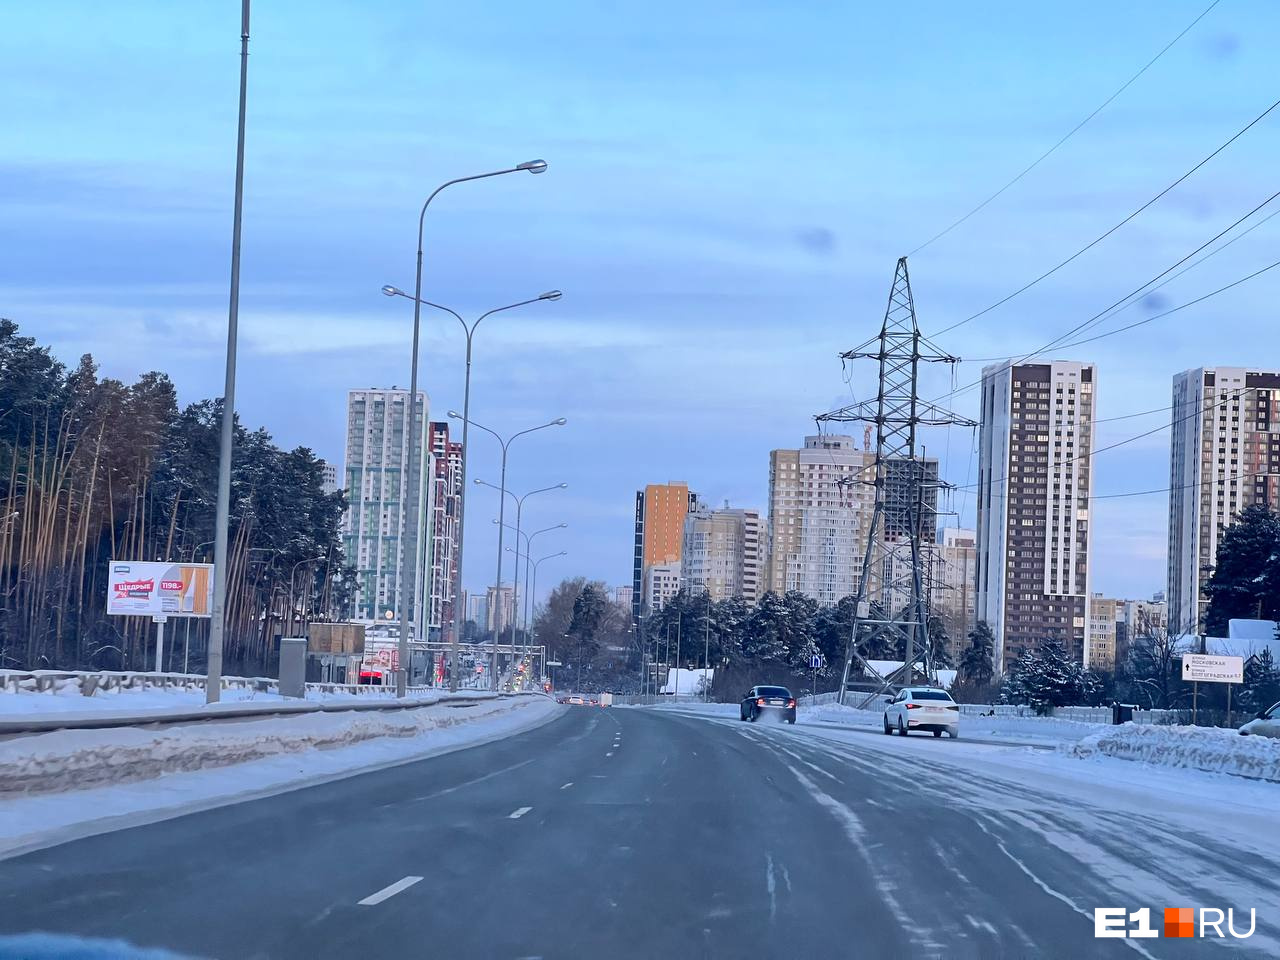 Синоптики рассказали, когда потеплеет в Екатеринбурге. Онлайн о морозном начале рабочей недели